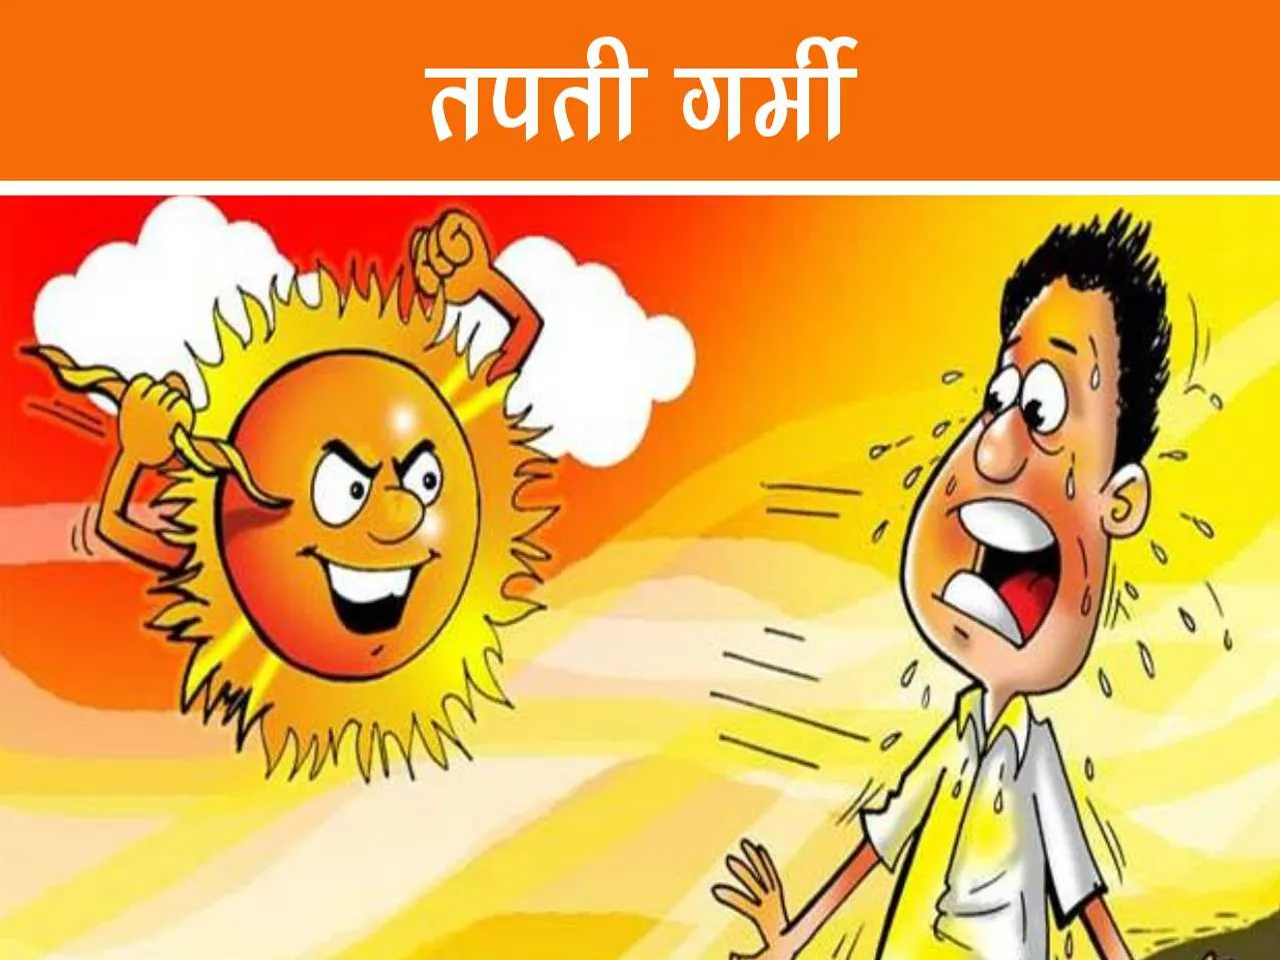 Sun and Man cartoon image